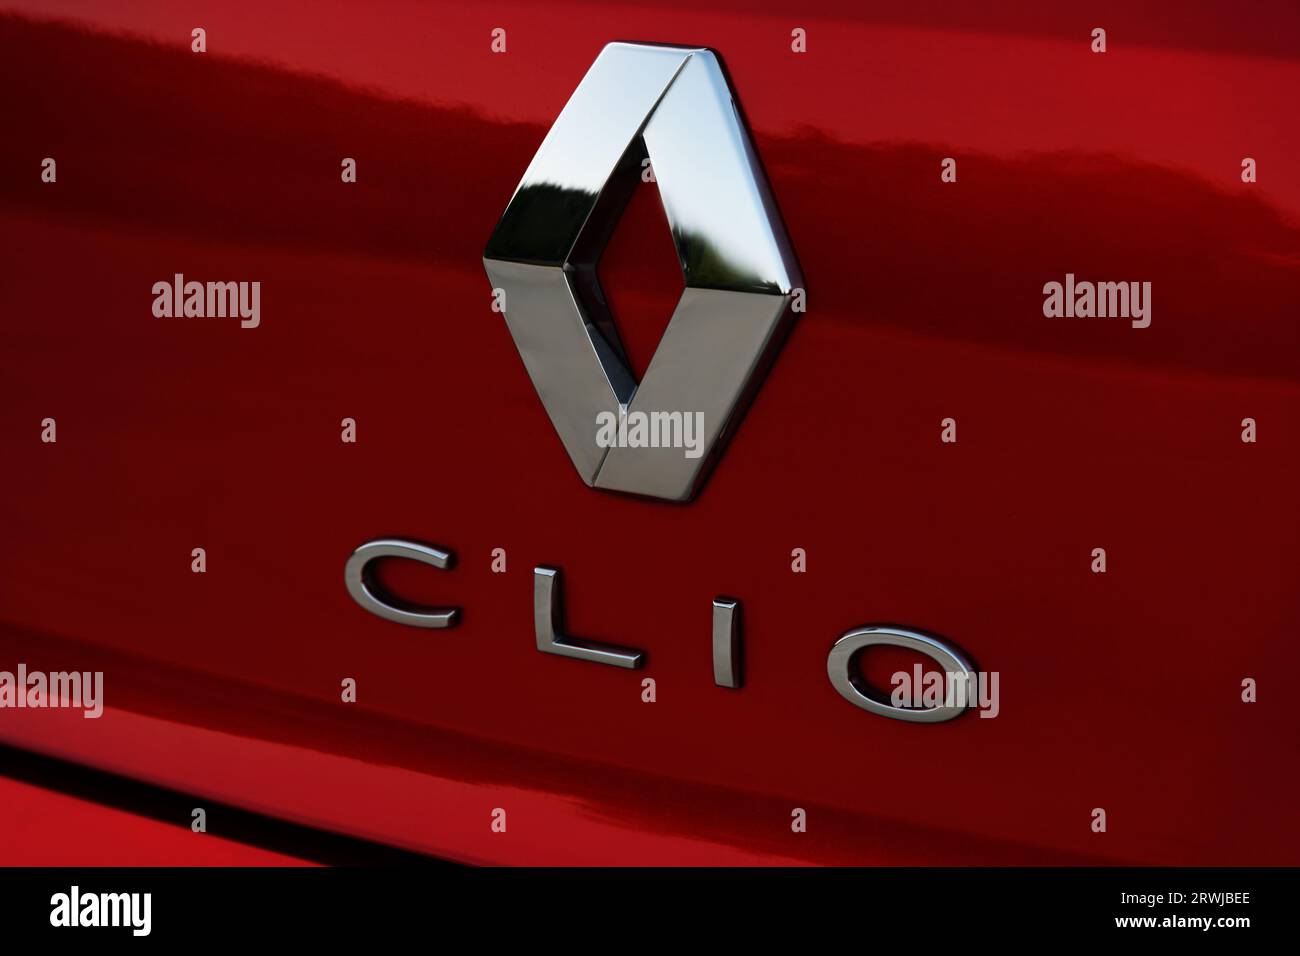 Izmir, Turquie - 2 août 2023 : gros plan du logo sur le coffre d'une Renault Clio rouge, capturant les détails complexes et l'identité de la marque. Banque D'Images